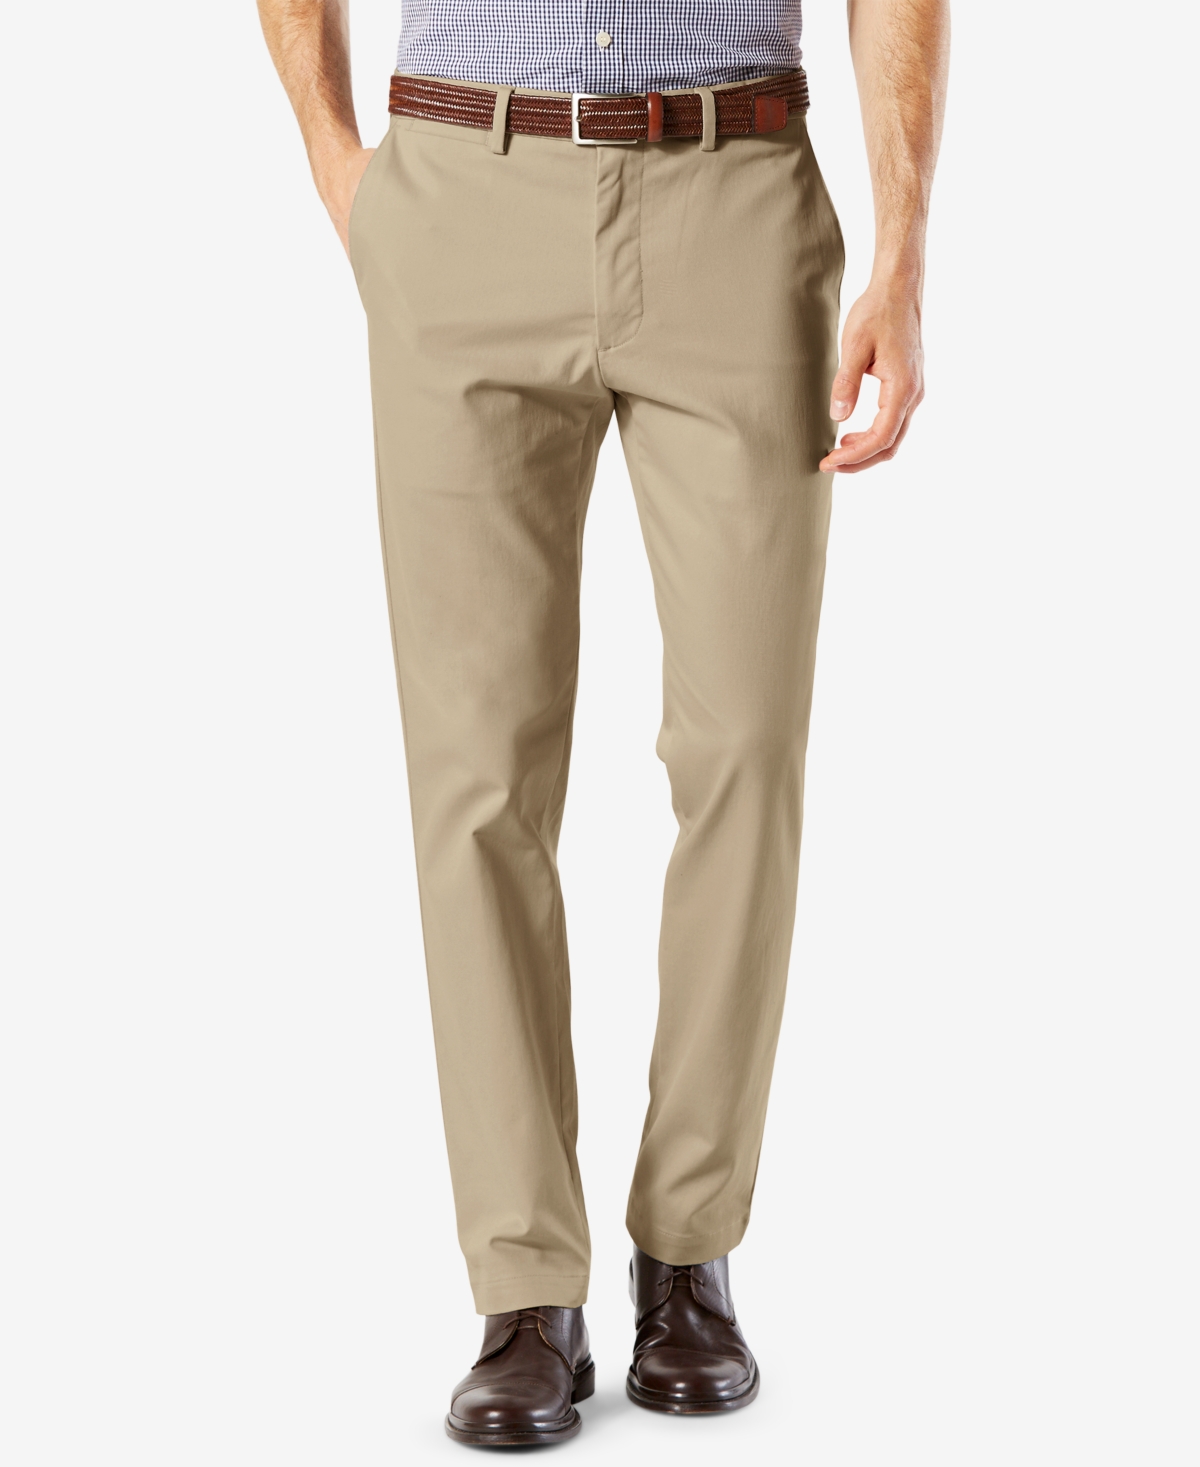 Men's Signature Lux Cotton Slim Fit Stretch Khaki Pants - Charcoal Heather